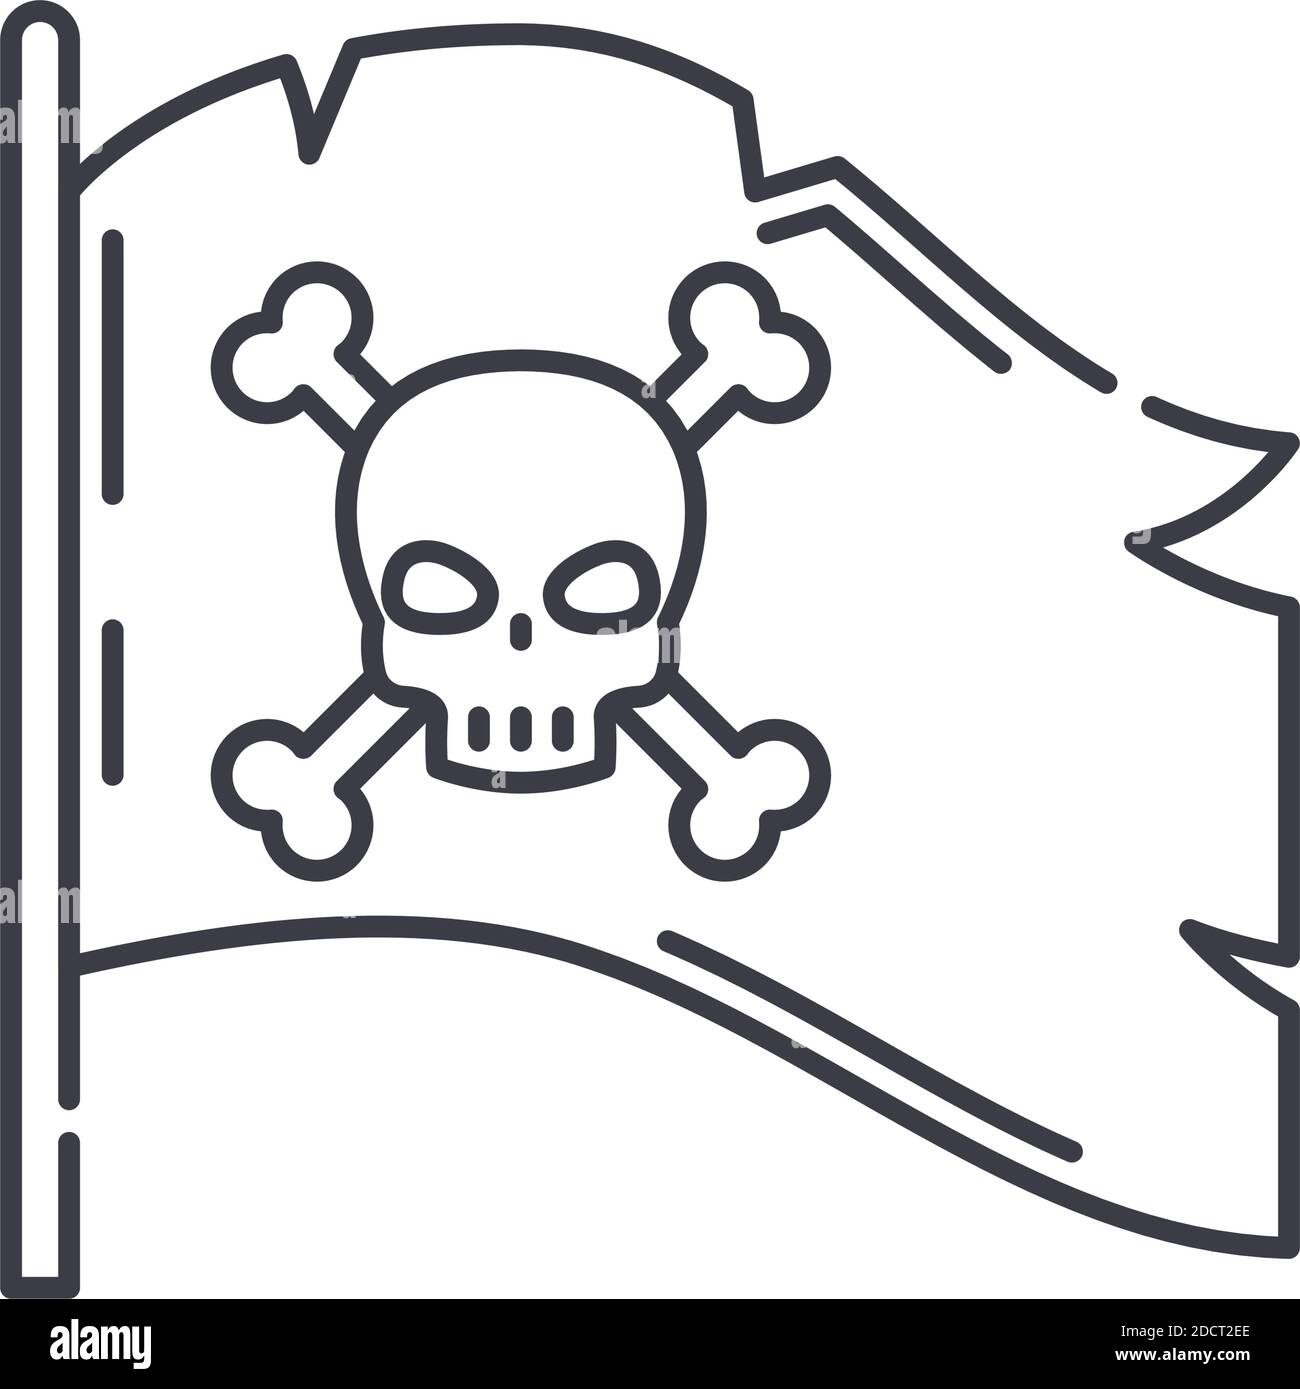 Icono de bandera pirata, ilustración lineal aislada, vector de